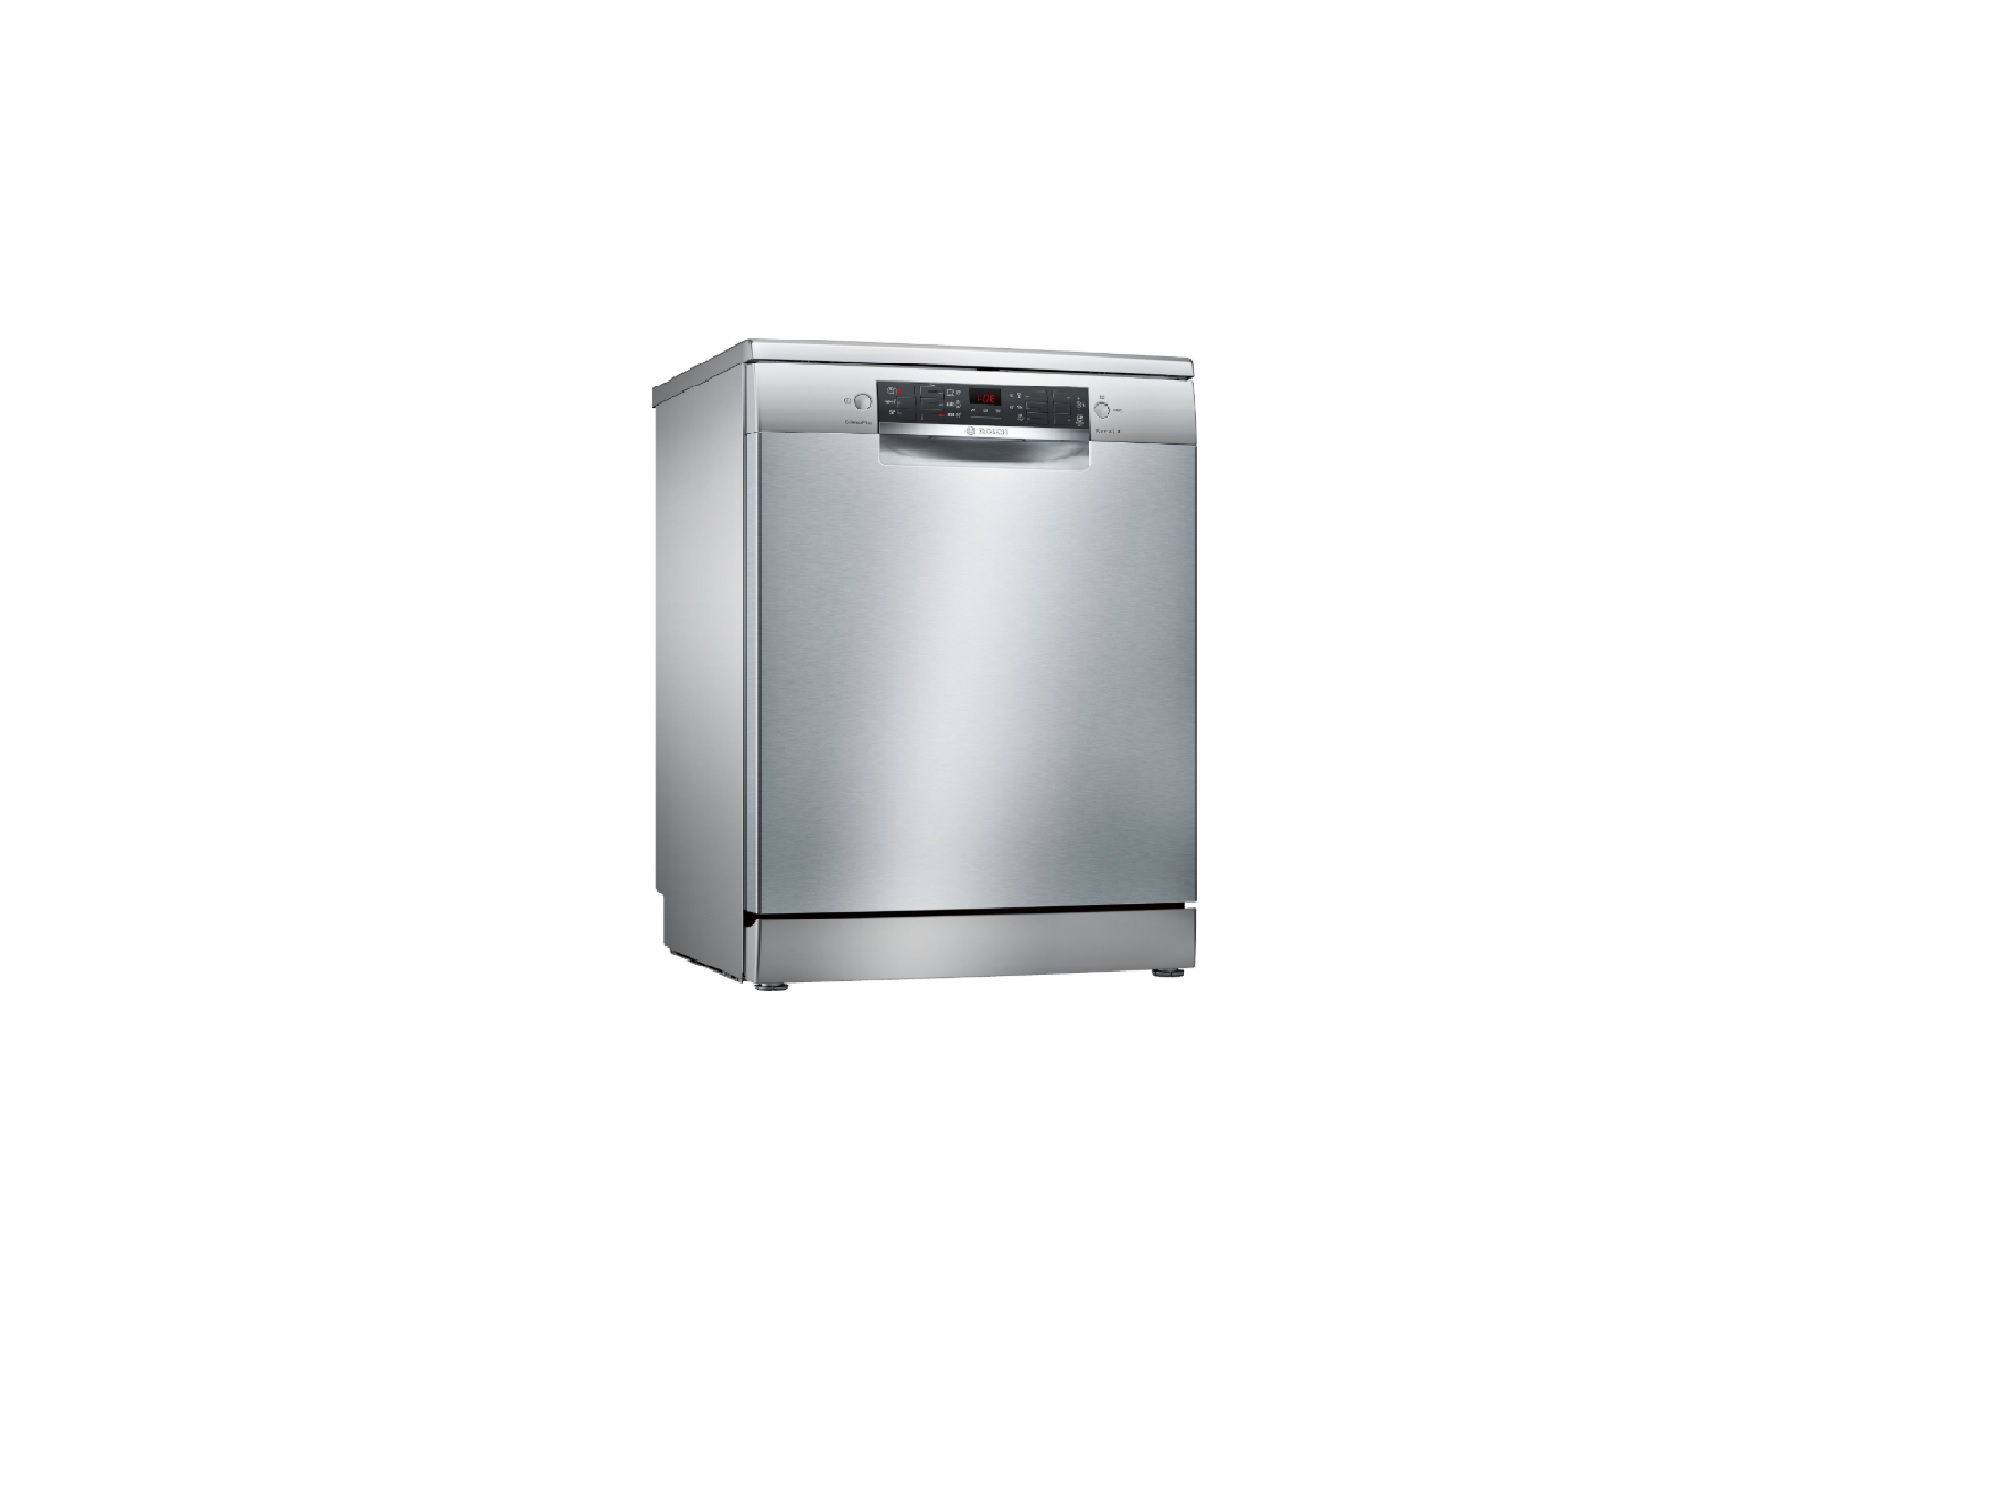 Bosch Masina za pranje posudja SMS46KI01E #vikendakcija